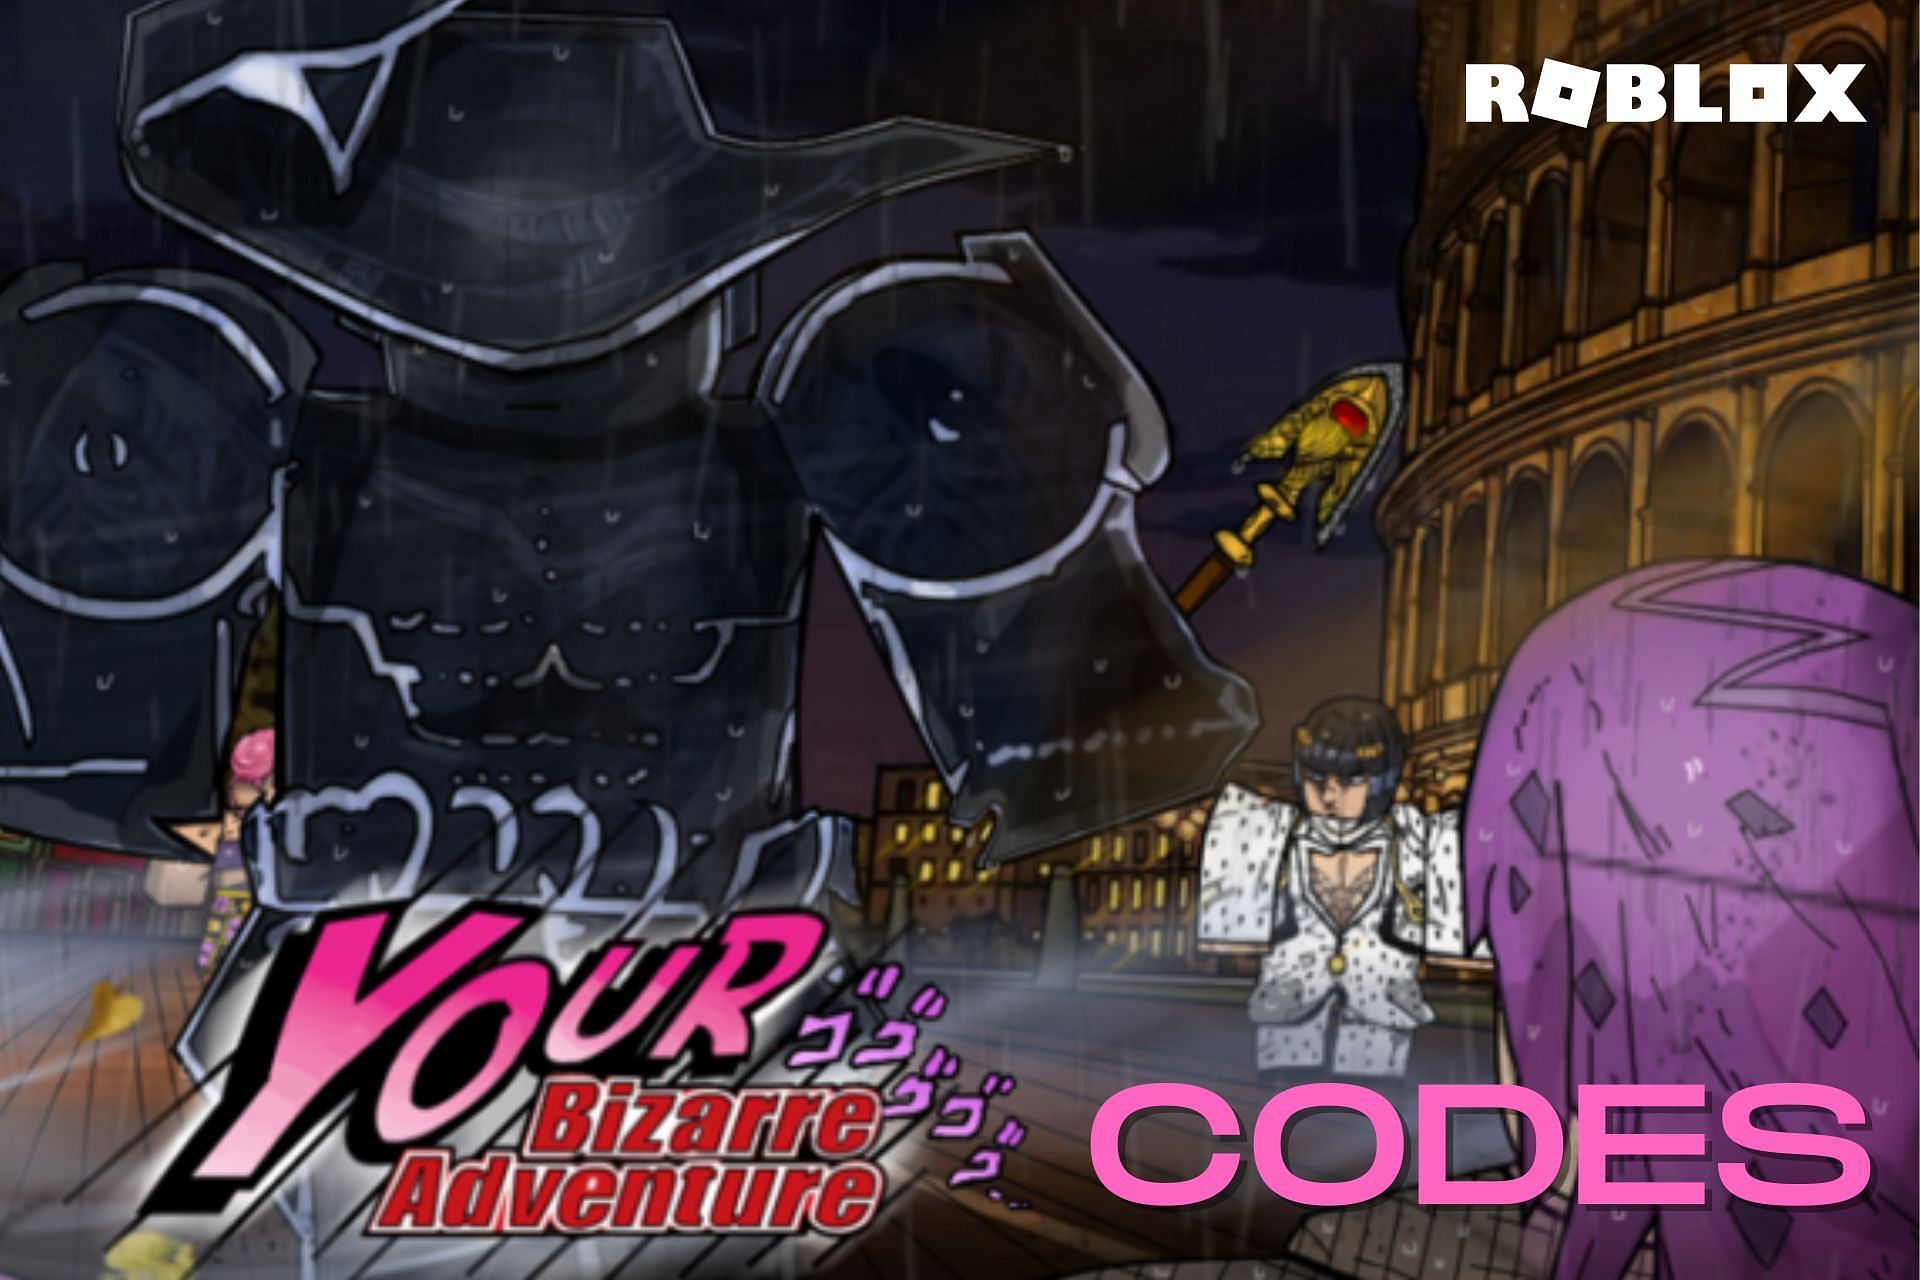 FINALLY CODES IN YOUR BIZARRE ADVENTURE!  (Roblox YBA Codes) Roblox Codes  2022 